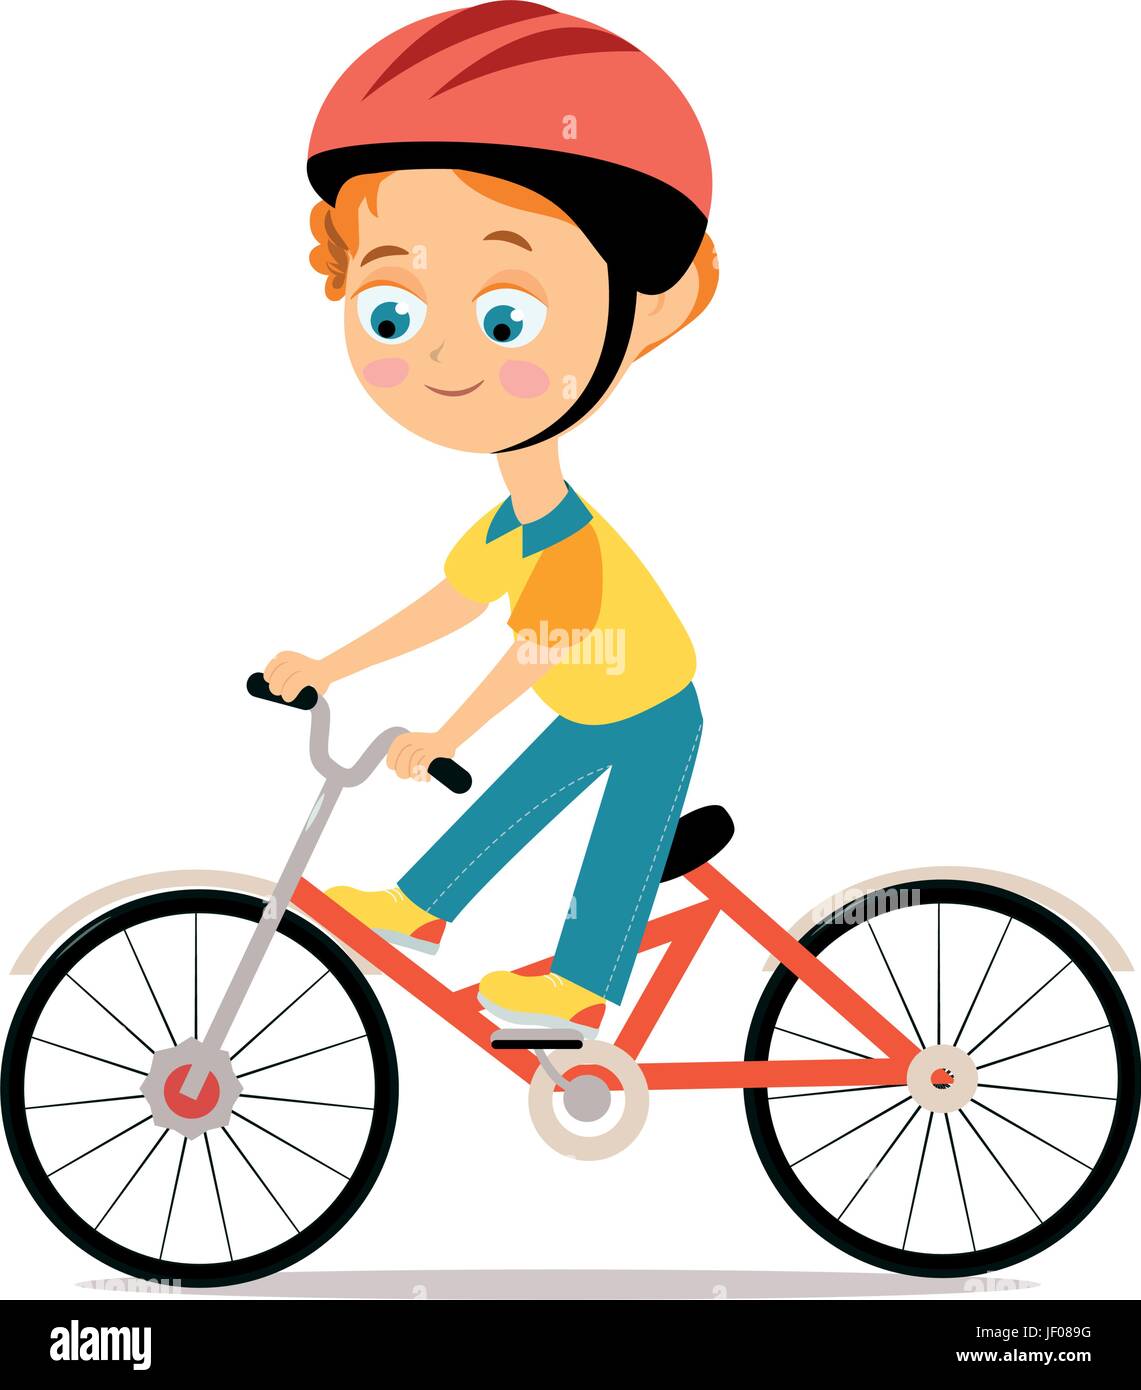 Glückliche kleine Junge im Helm Reiten Fahrrad Stock Vektor